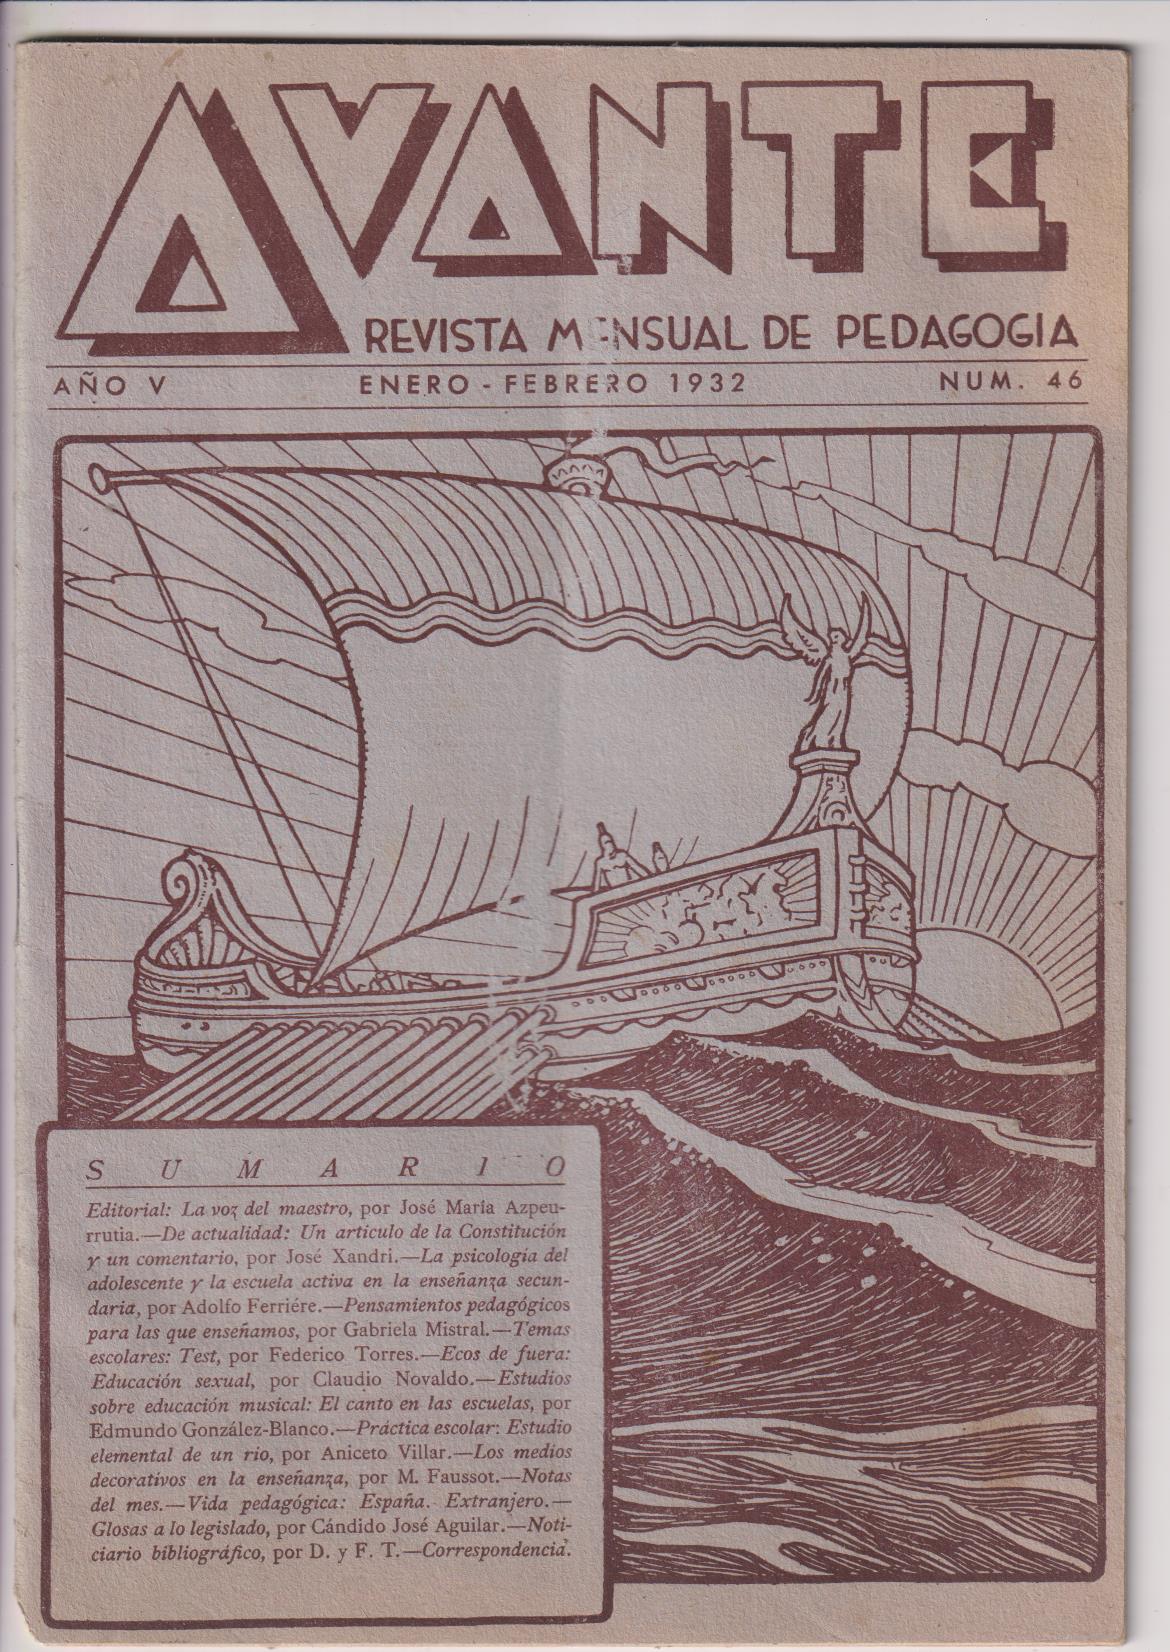 Avante. Revista Mensual de Pedagogía. nº 46. Enero-Febrero 1932